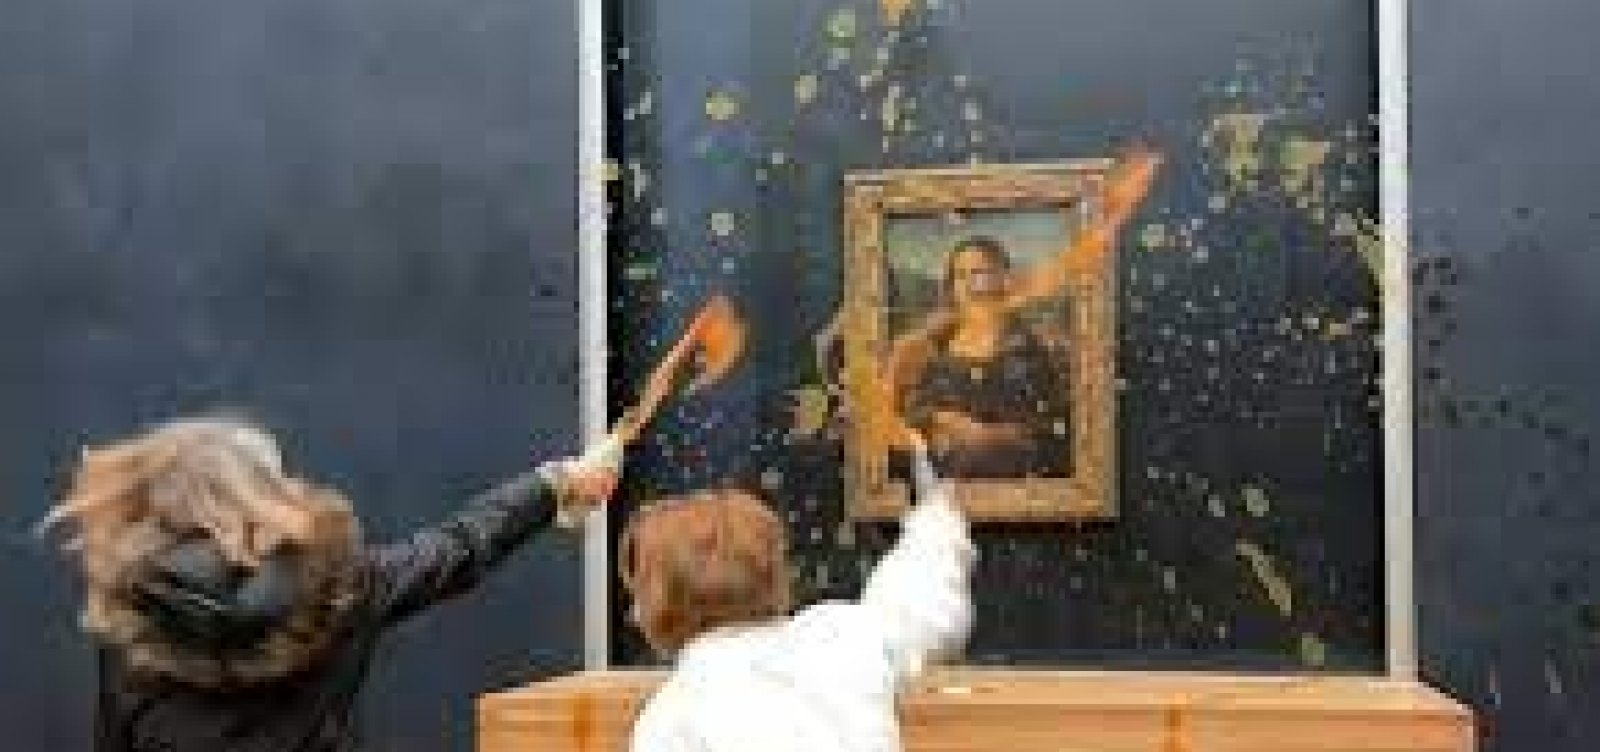 Ativistas são multadas em € 1.500 por atirarem sopa contra quadro de Monalisa, no Louvre